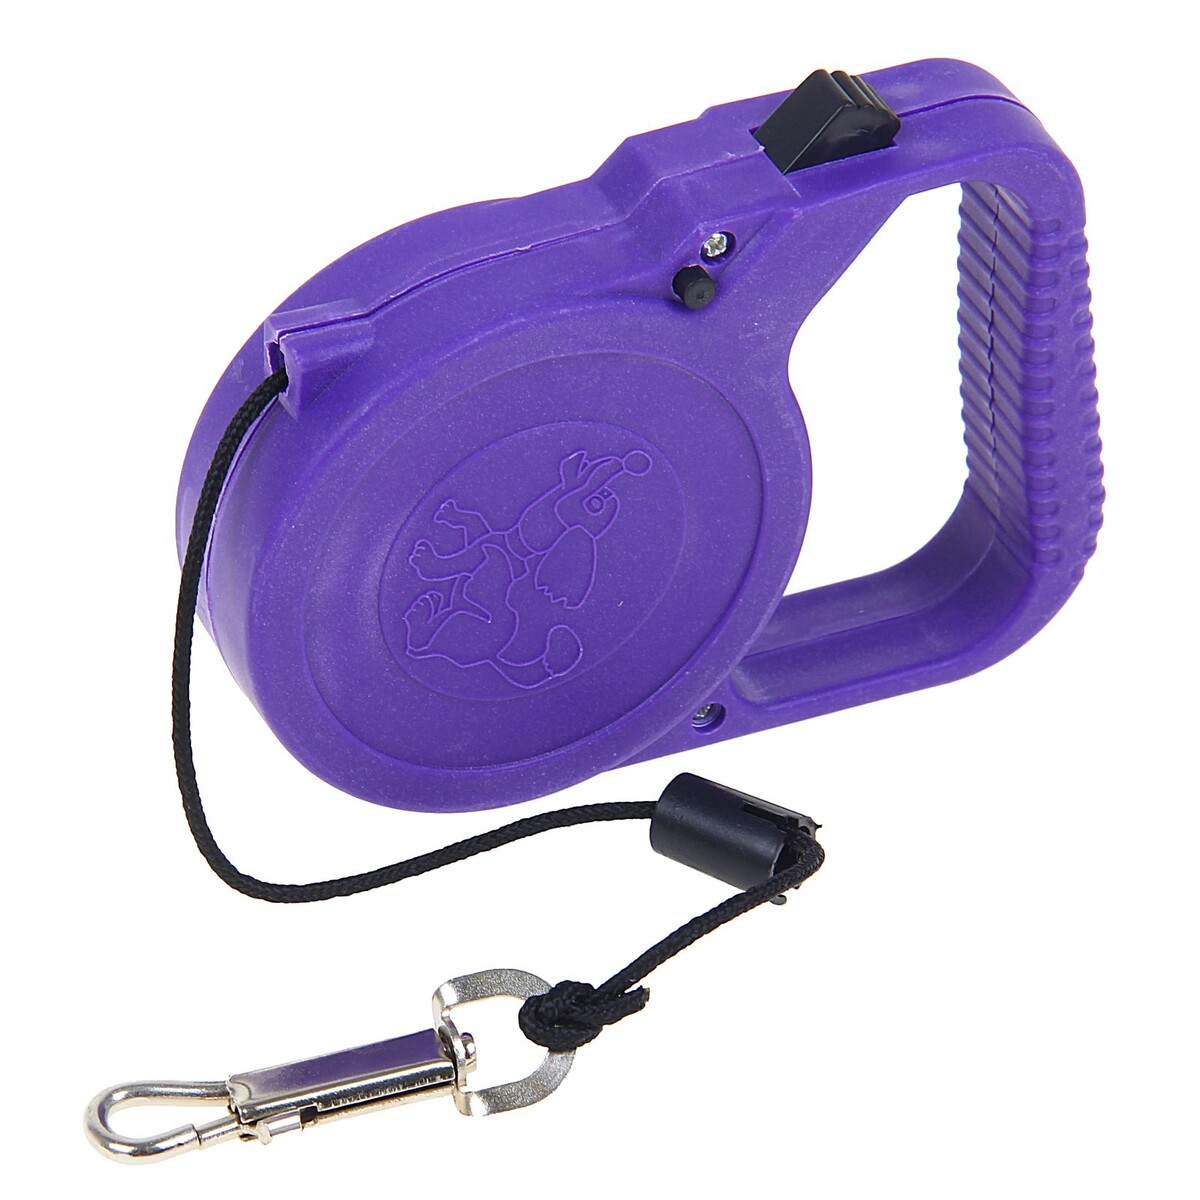 Рулетка малая эконом, 3 м, до 18 кг, фиолетовая полусфера bosu гимнастическая 46см фиолетовая с эспандером и насосом b31651 bosu022 9